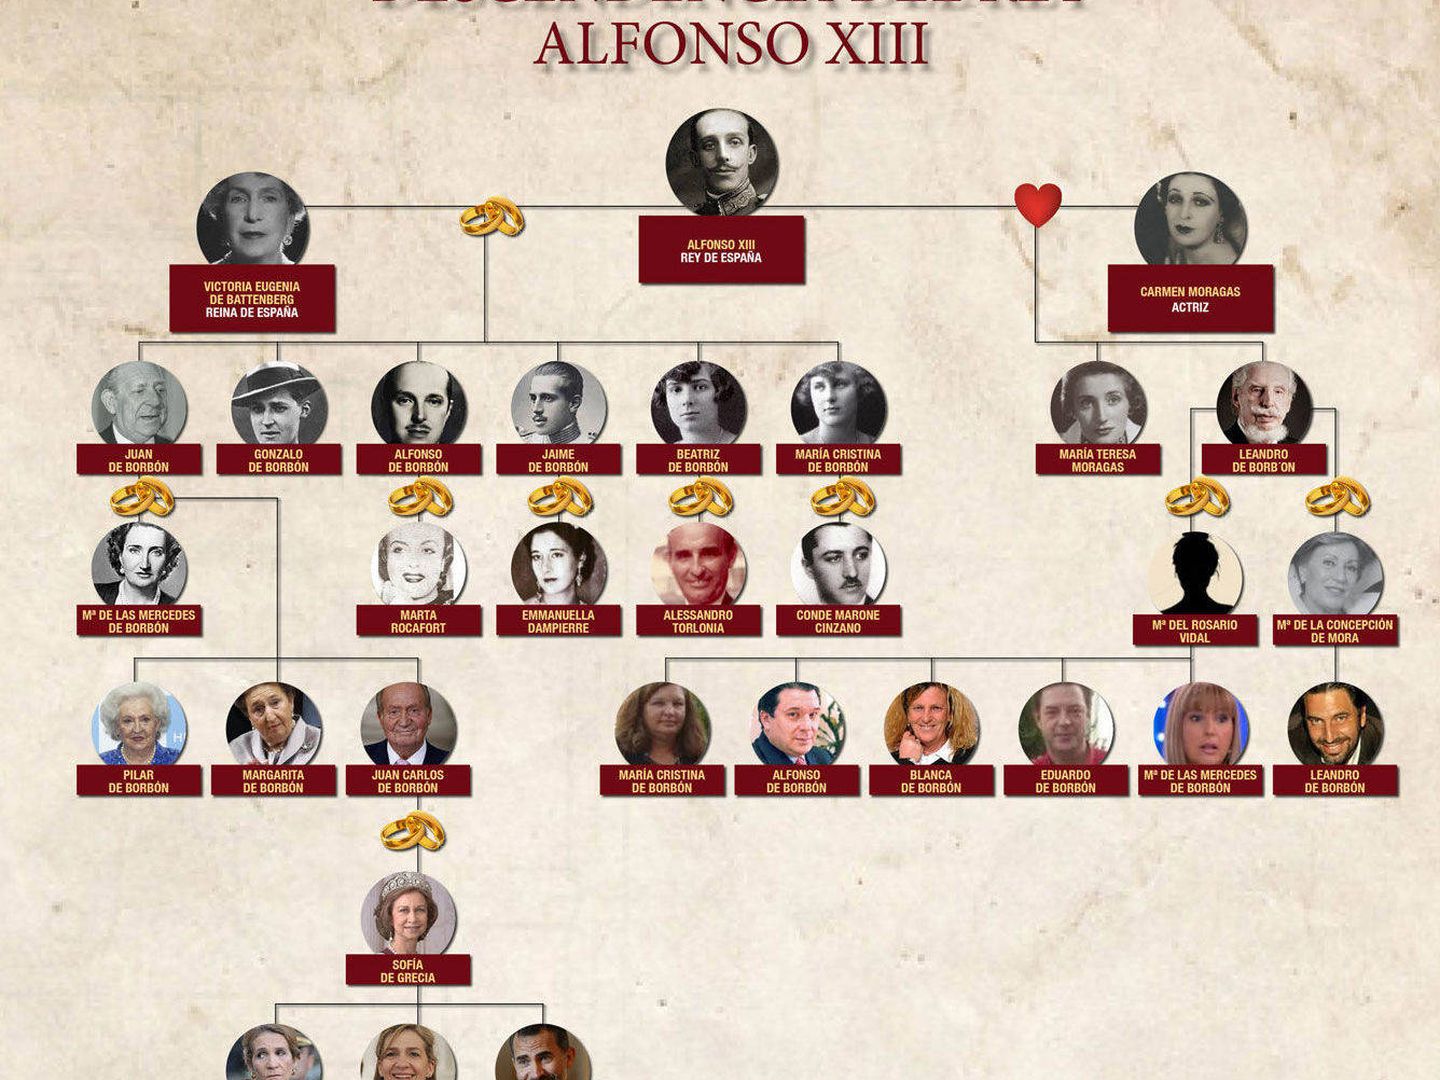 El árbol genealógico de los descendientes de Alfonso XIII